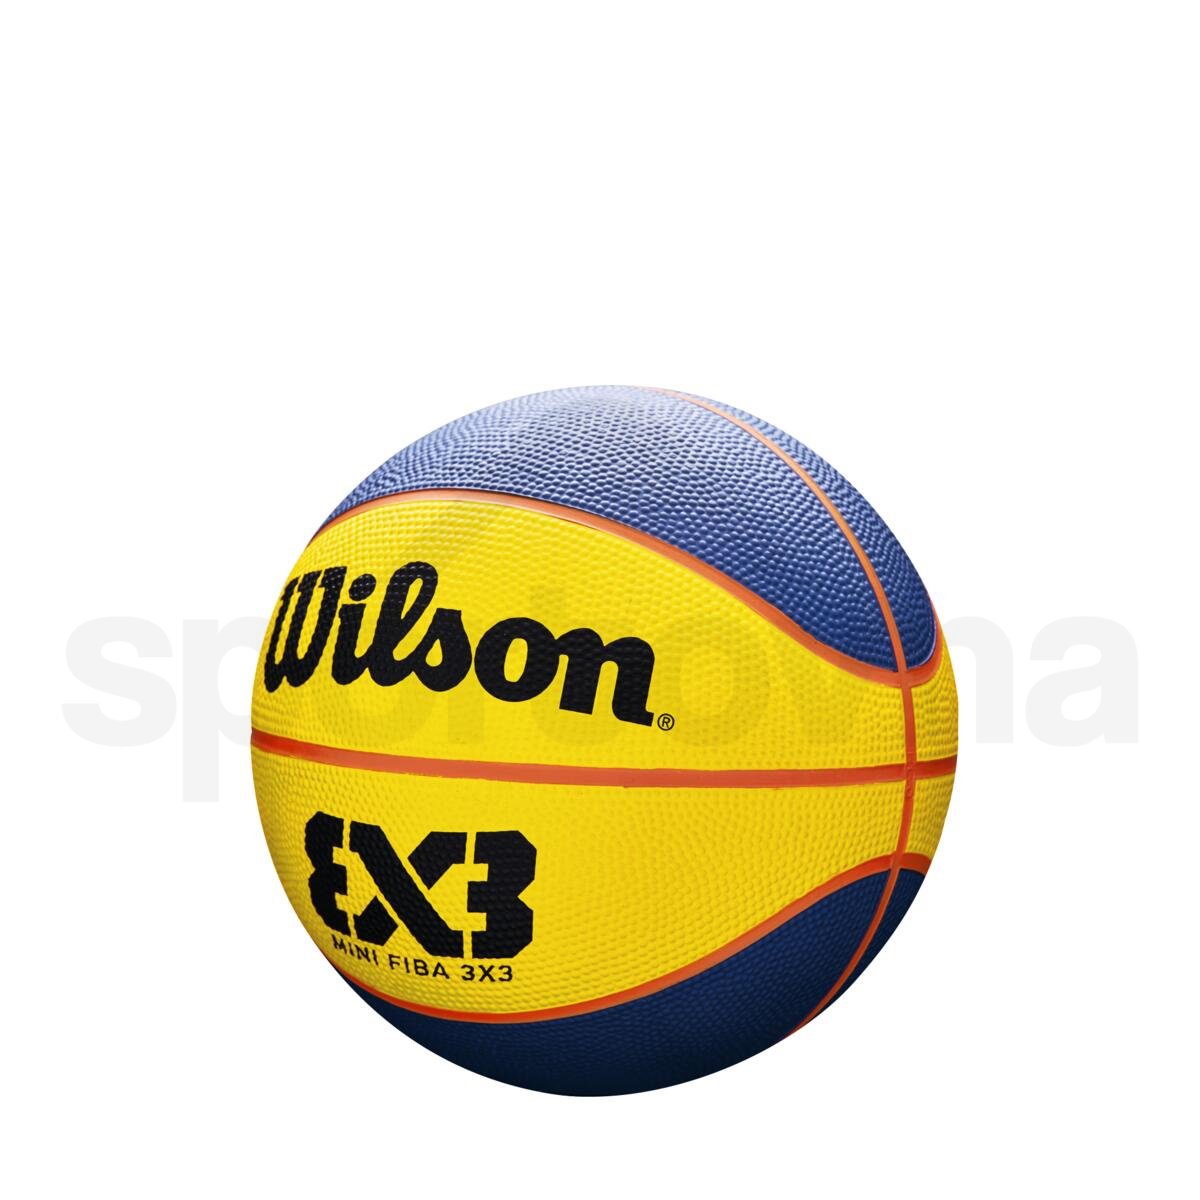 Míč Wilson FIBA 3x3 Mini Rubber Basketball - žlutá/modrá